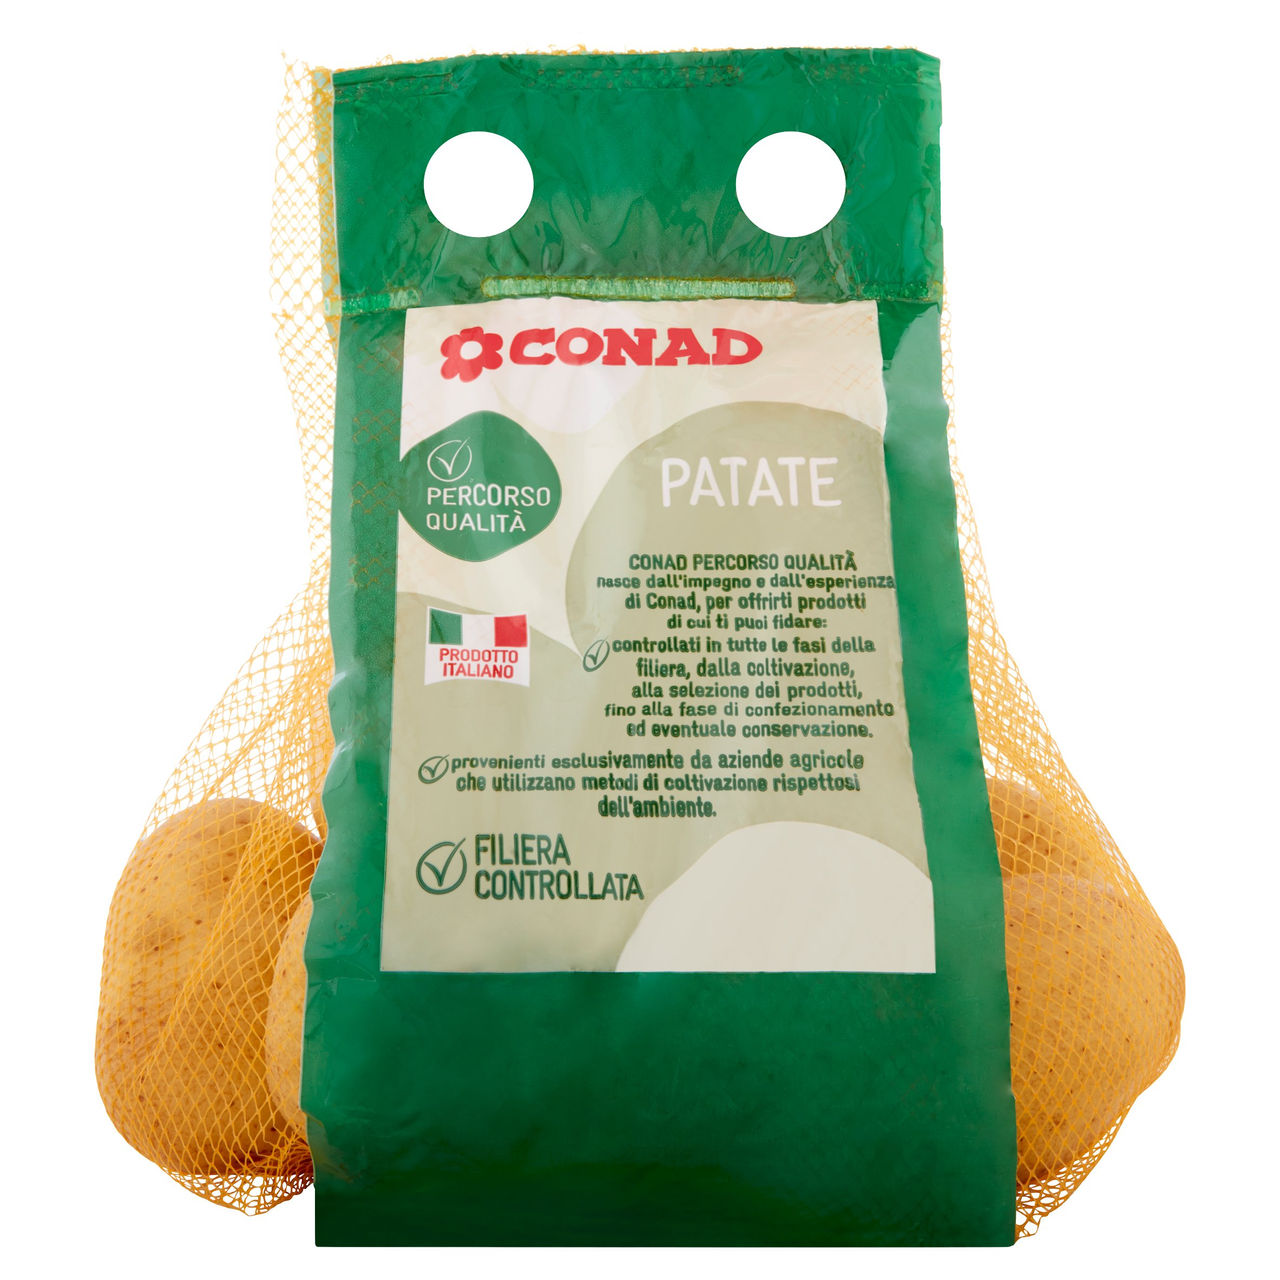 Patate Italiane per Tutti gli Usi 1,5 kg Conad